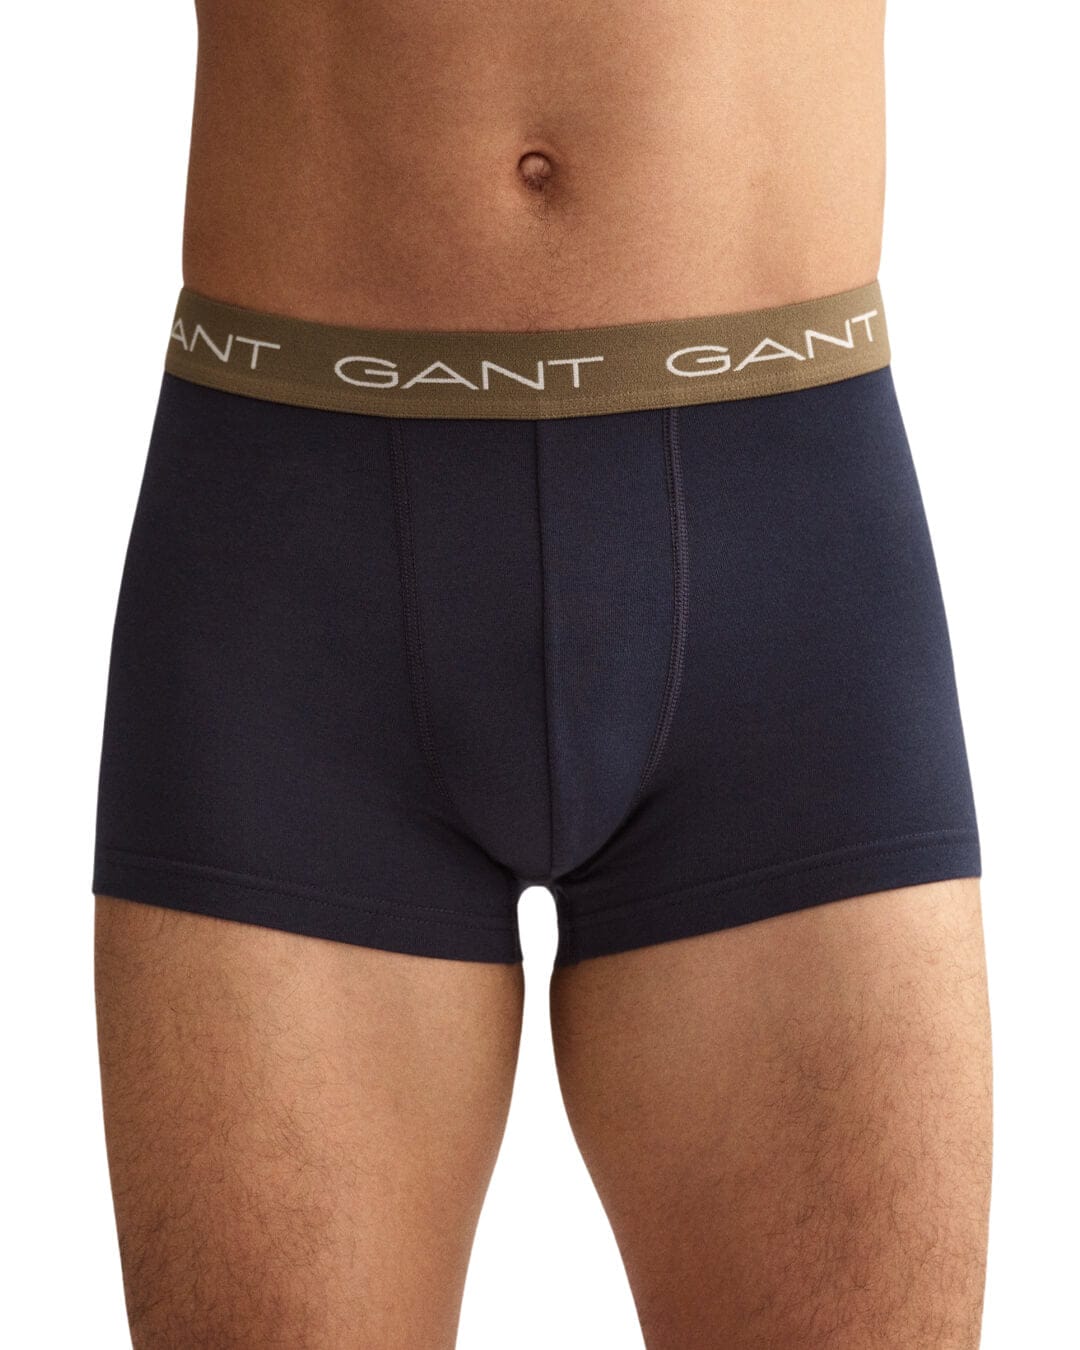 Gant Underwear Gant Three-Pack Navy Trunks